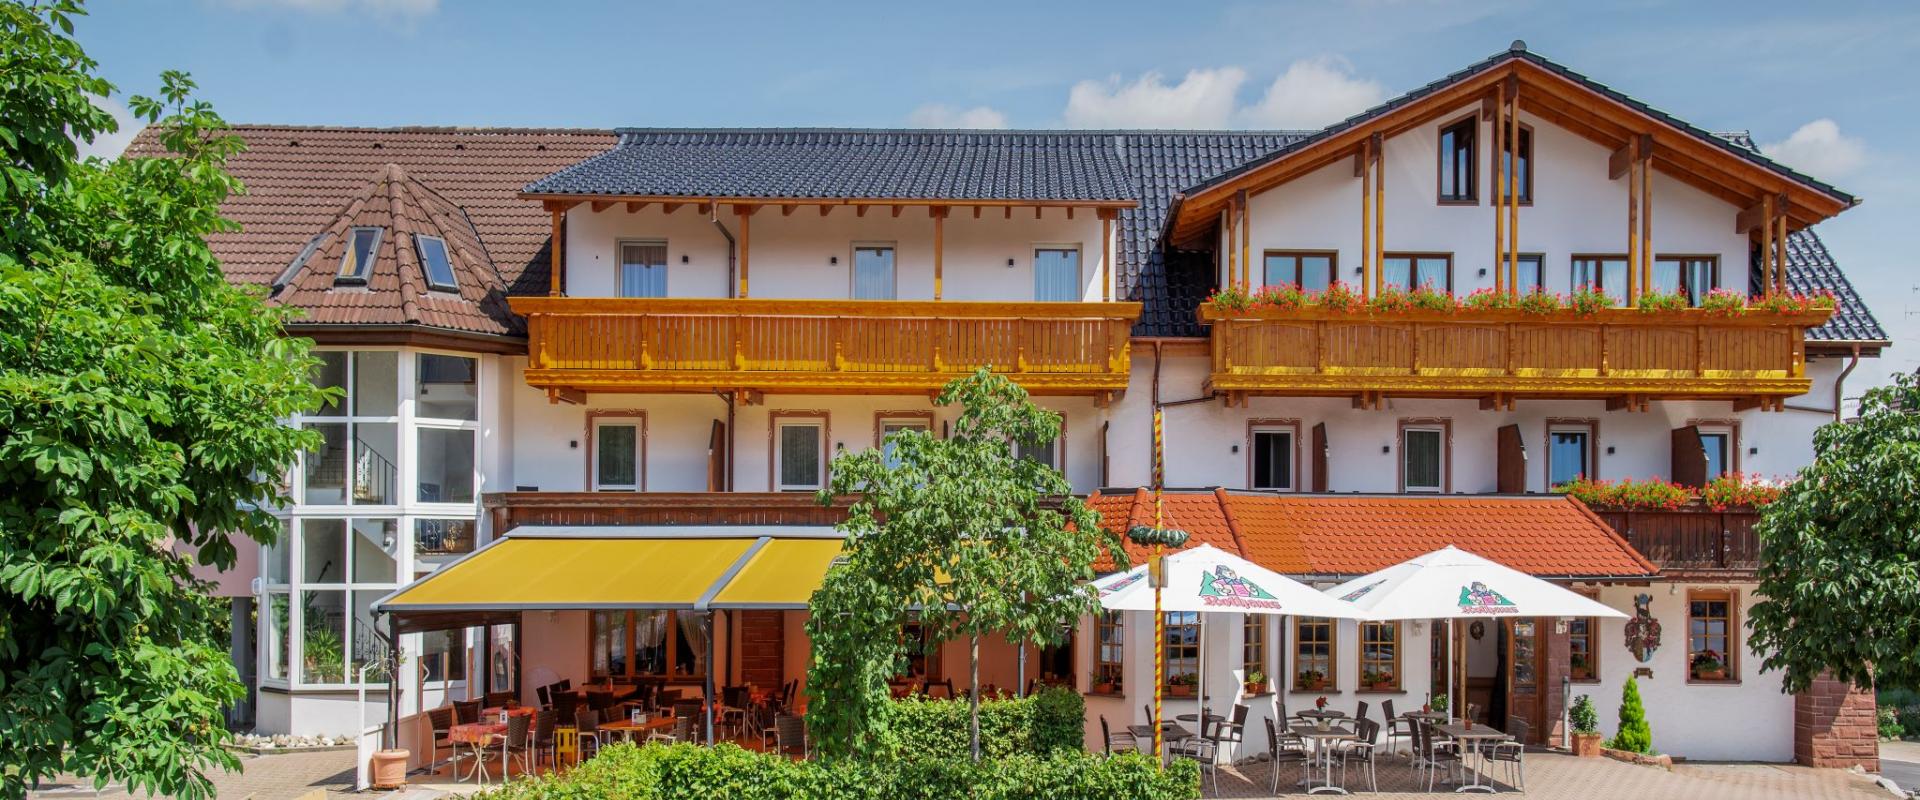 14237 Motorrad Hotel zur Burg im Schwarzwald.jpg